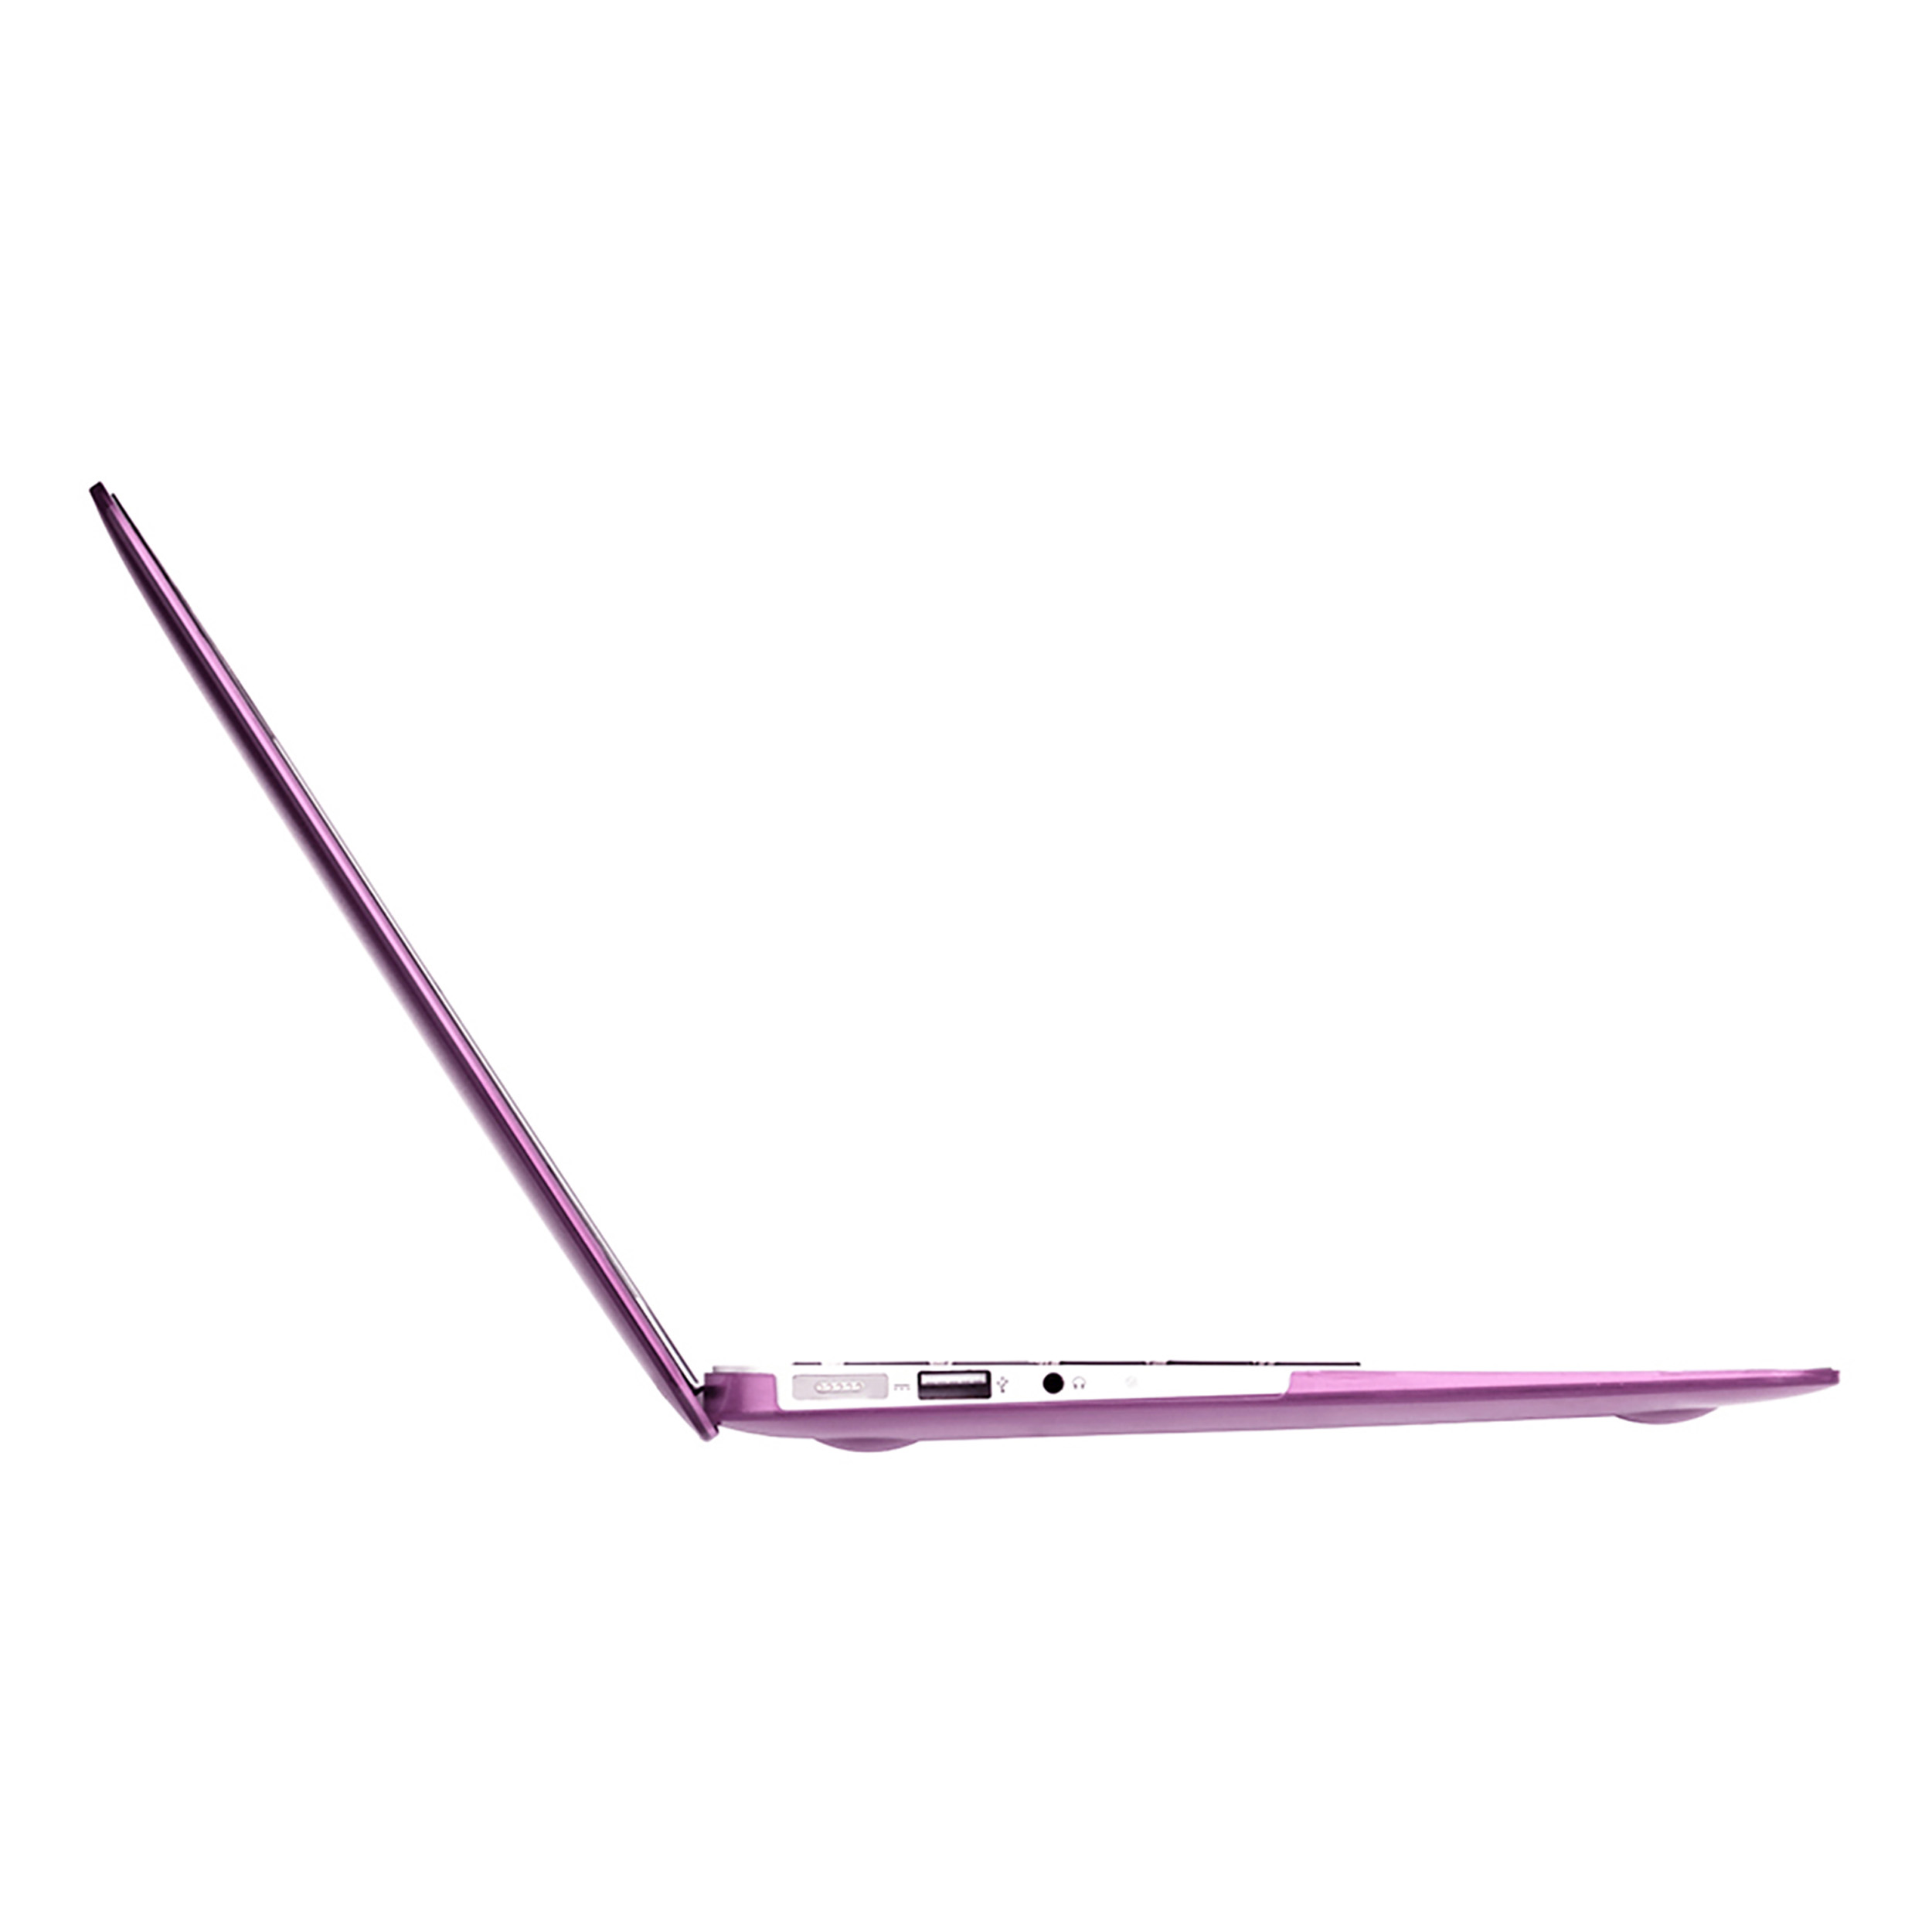 Apple Schutzhülle case Full MacBook pink Air, Cover für Protective PC, KMP Pink Premium für 13\